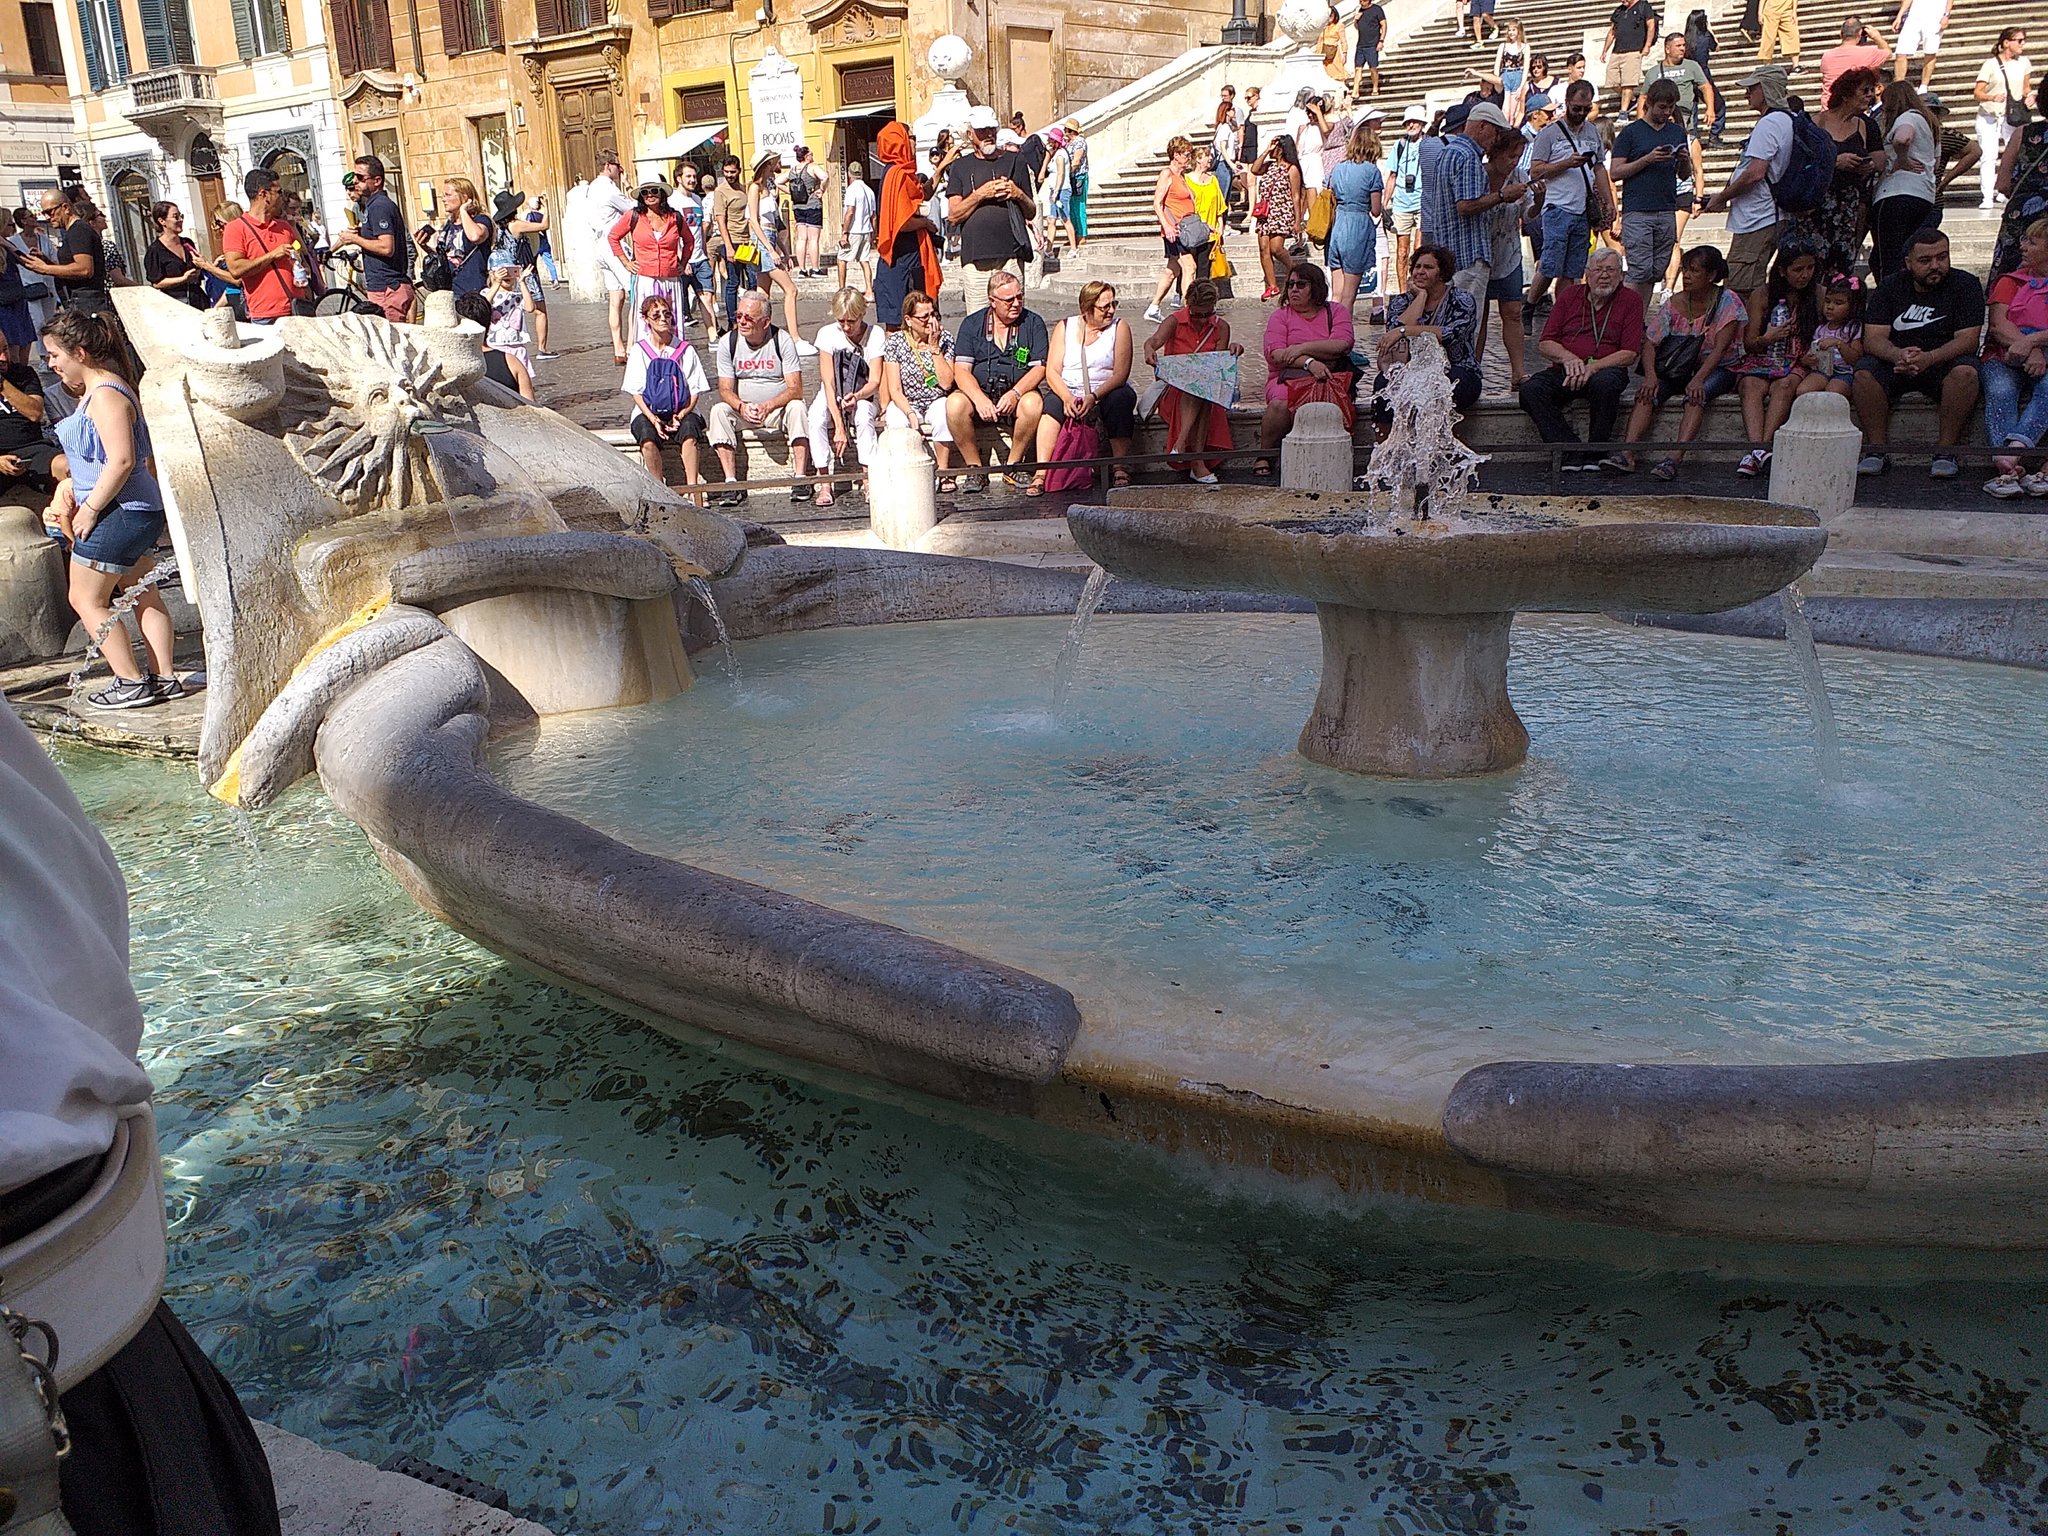 fuego oferta Morbosidad LauraFreixas on Twitter: "Algunos lugares maravillosos de Roma. La barcaza  de mármol de la fuente de la Plaza de España, los mosaicos y los frescos de  San Clemente, las catacumbas de Priscila (